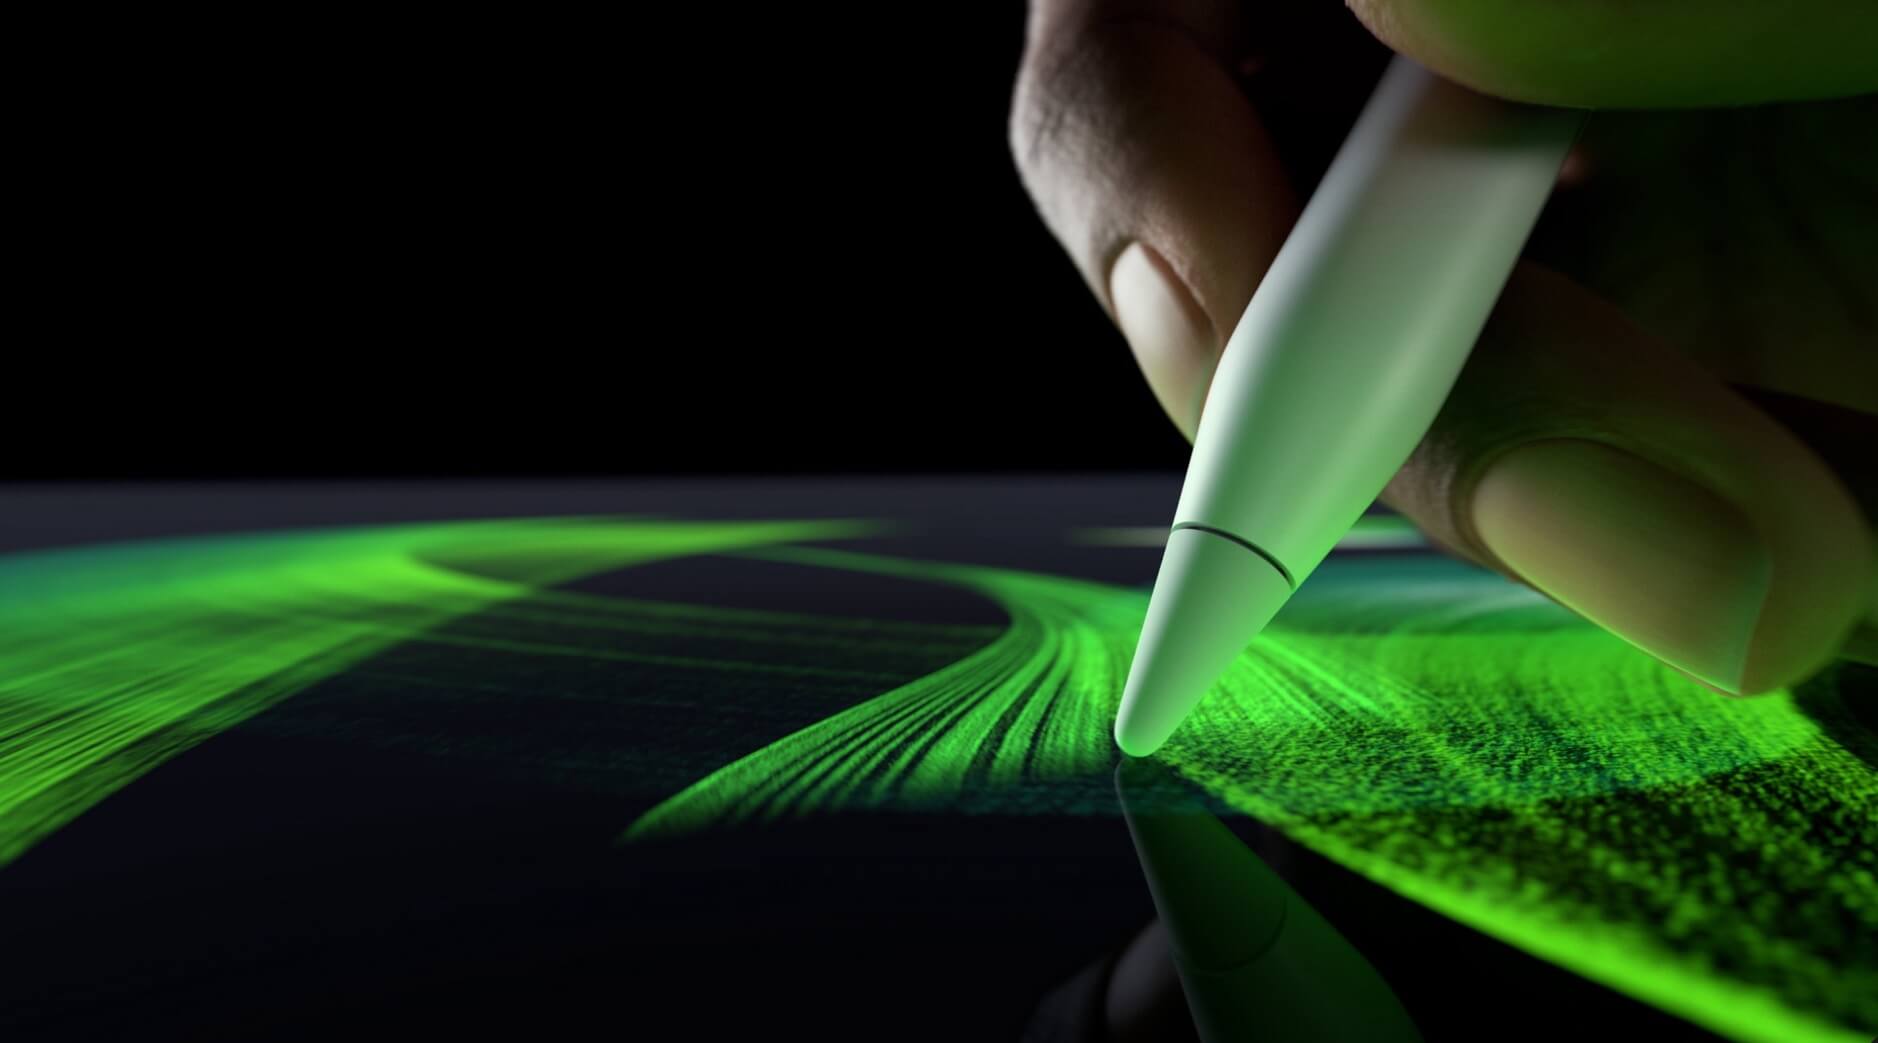 Das Bild zeigt eine Hand, die einen Apple Pencil Pro verwendet, um auf einem Tablet mit leuchtend grünen, dynamischen Lichtlinien zu zeichnen.